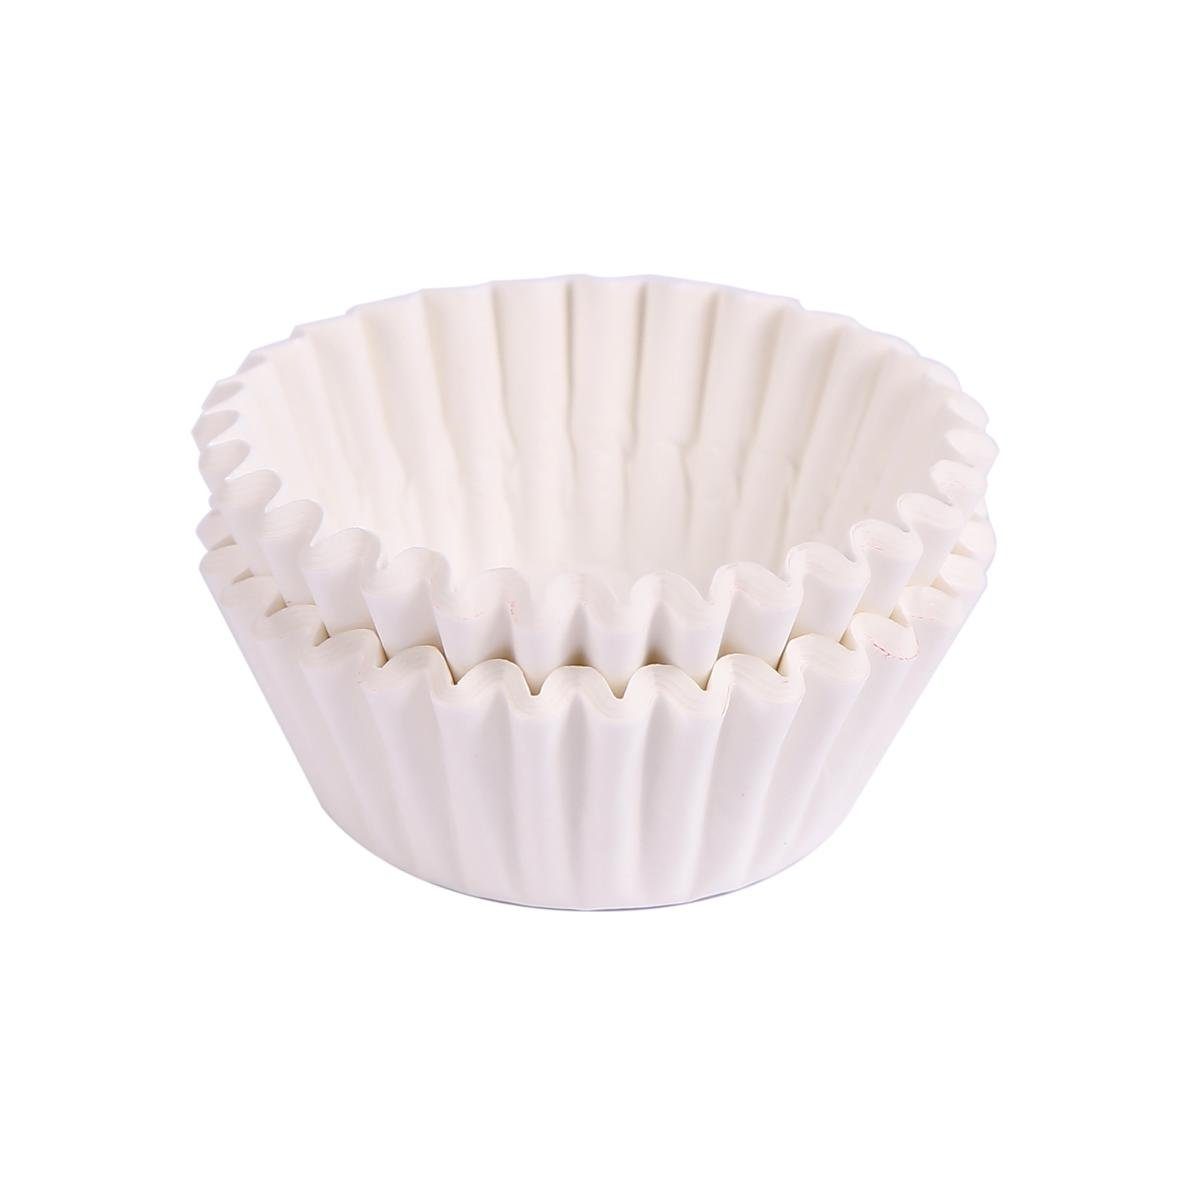 Miss Bakery's House Muffinform Mini Muffinförmchen, (Weiß 200-tlg), kleine Papierbackförmchen für Mini-Cupcakes und Minimuffins